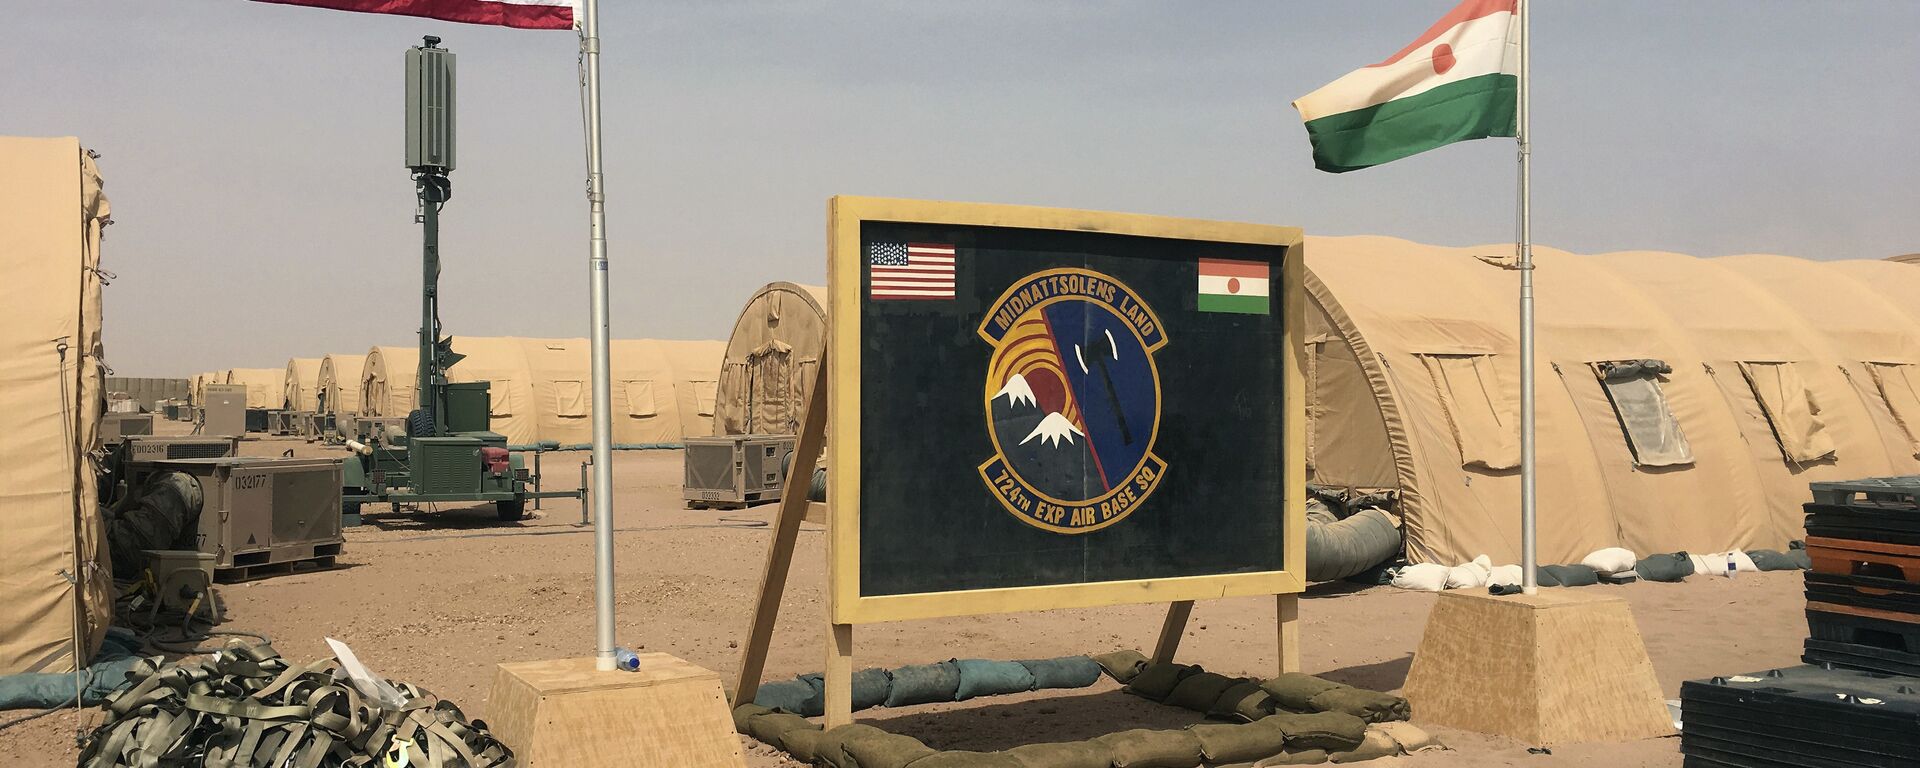 Les drapeaux américain et nigérien hissés côte à côte sur une base pour les forces aériennes soutenant la construction de la base aérienne nigérienne 201 à Agadez, au Niger. - Sputnik Afrique, 1920, 28.09.2021